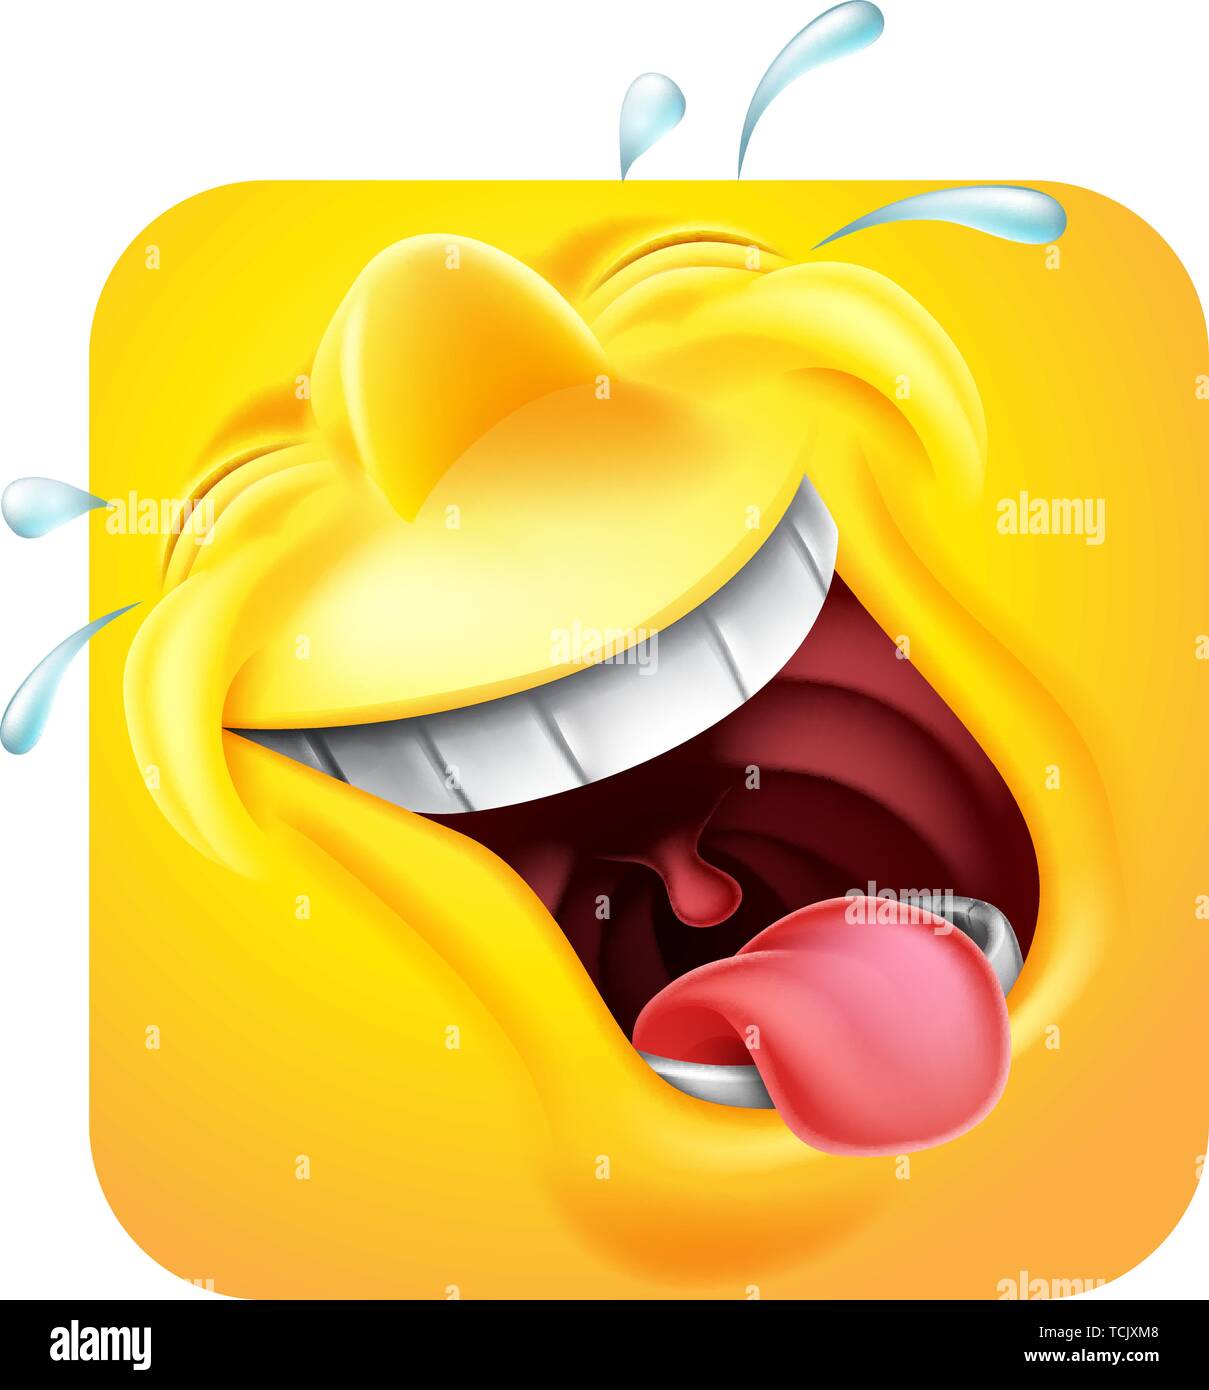 Ridere gli Emoji Emoticon Icona 3D personaggio dei fumetti Illustrazione Vettoriale